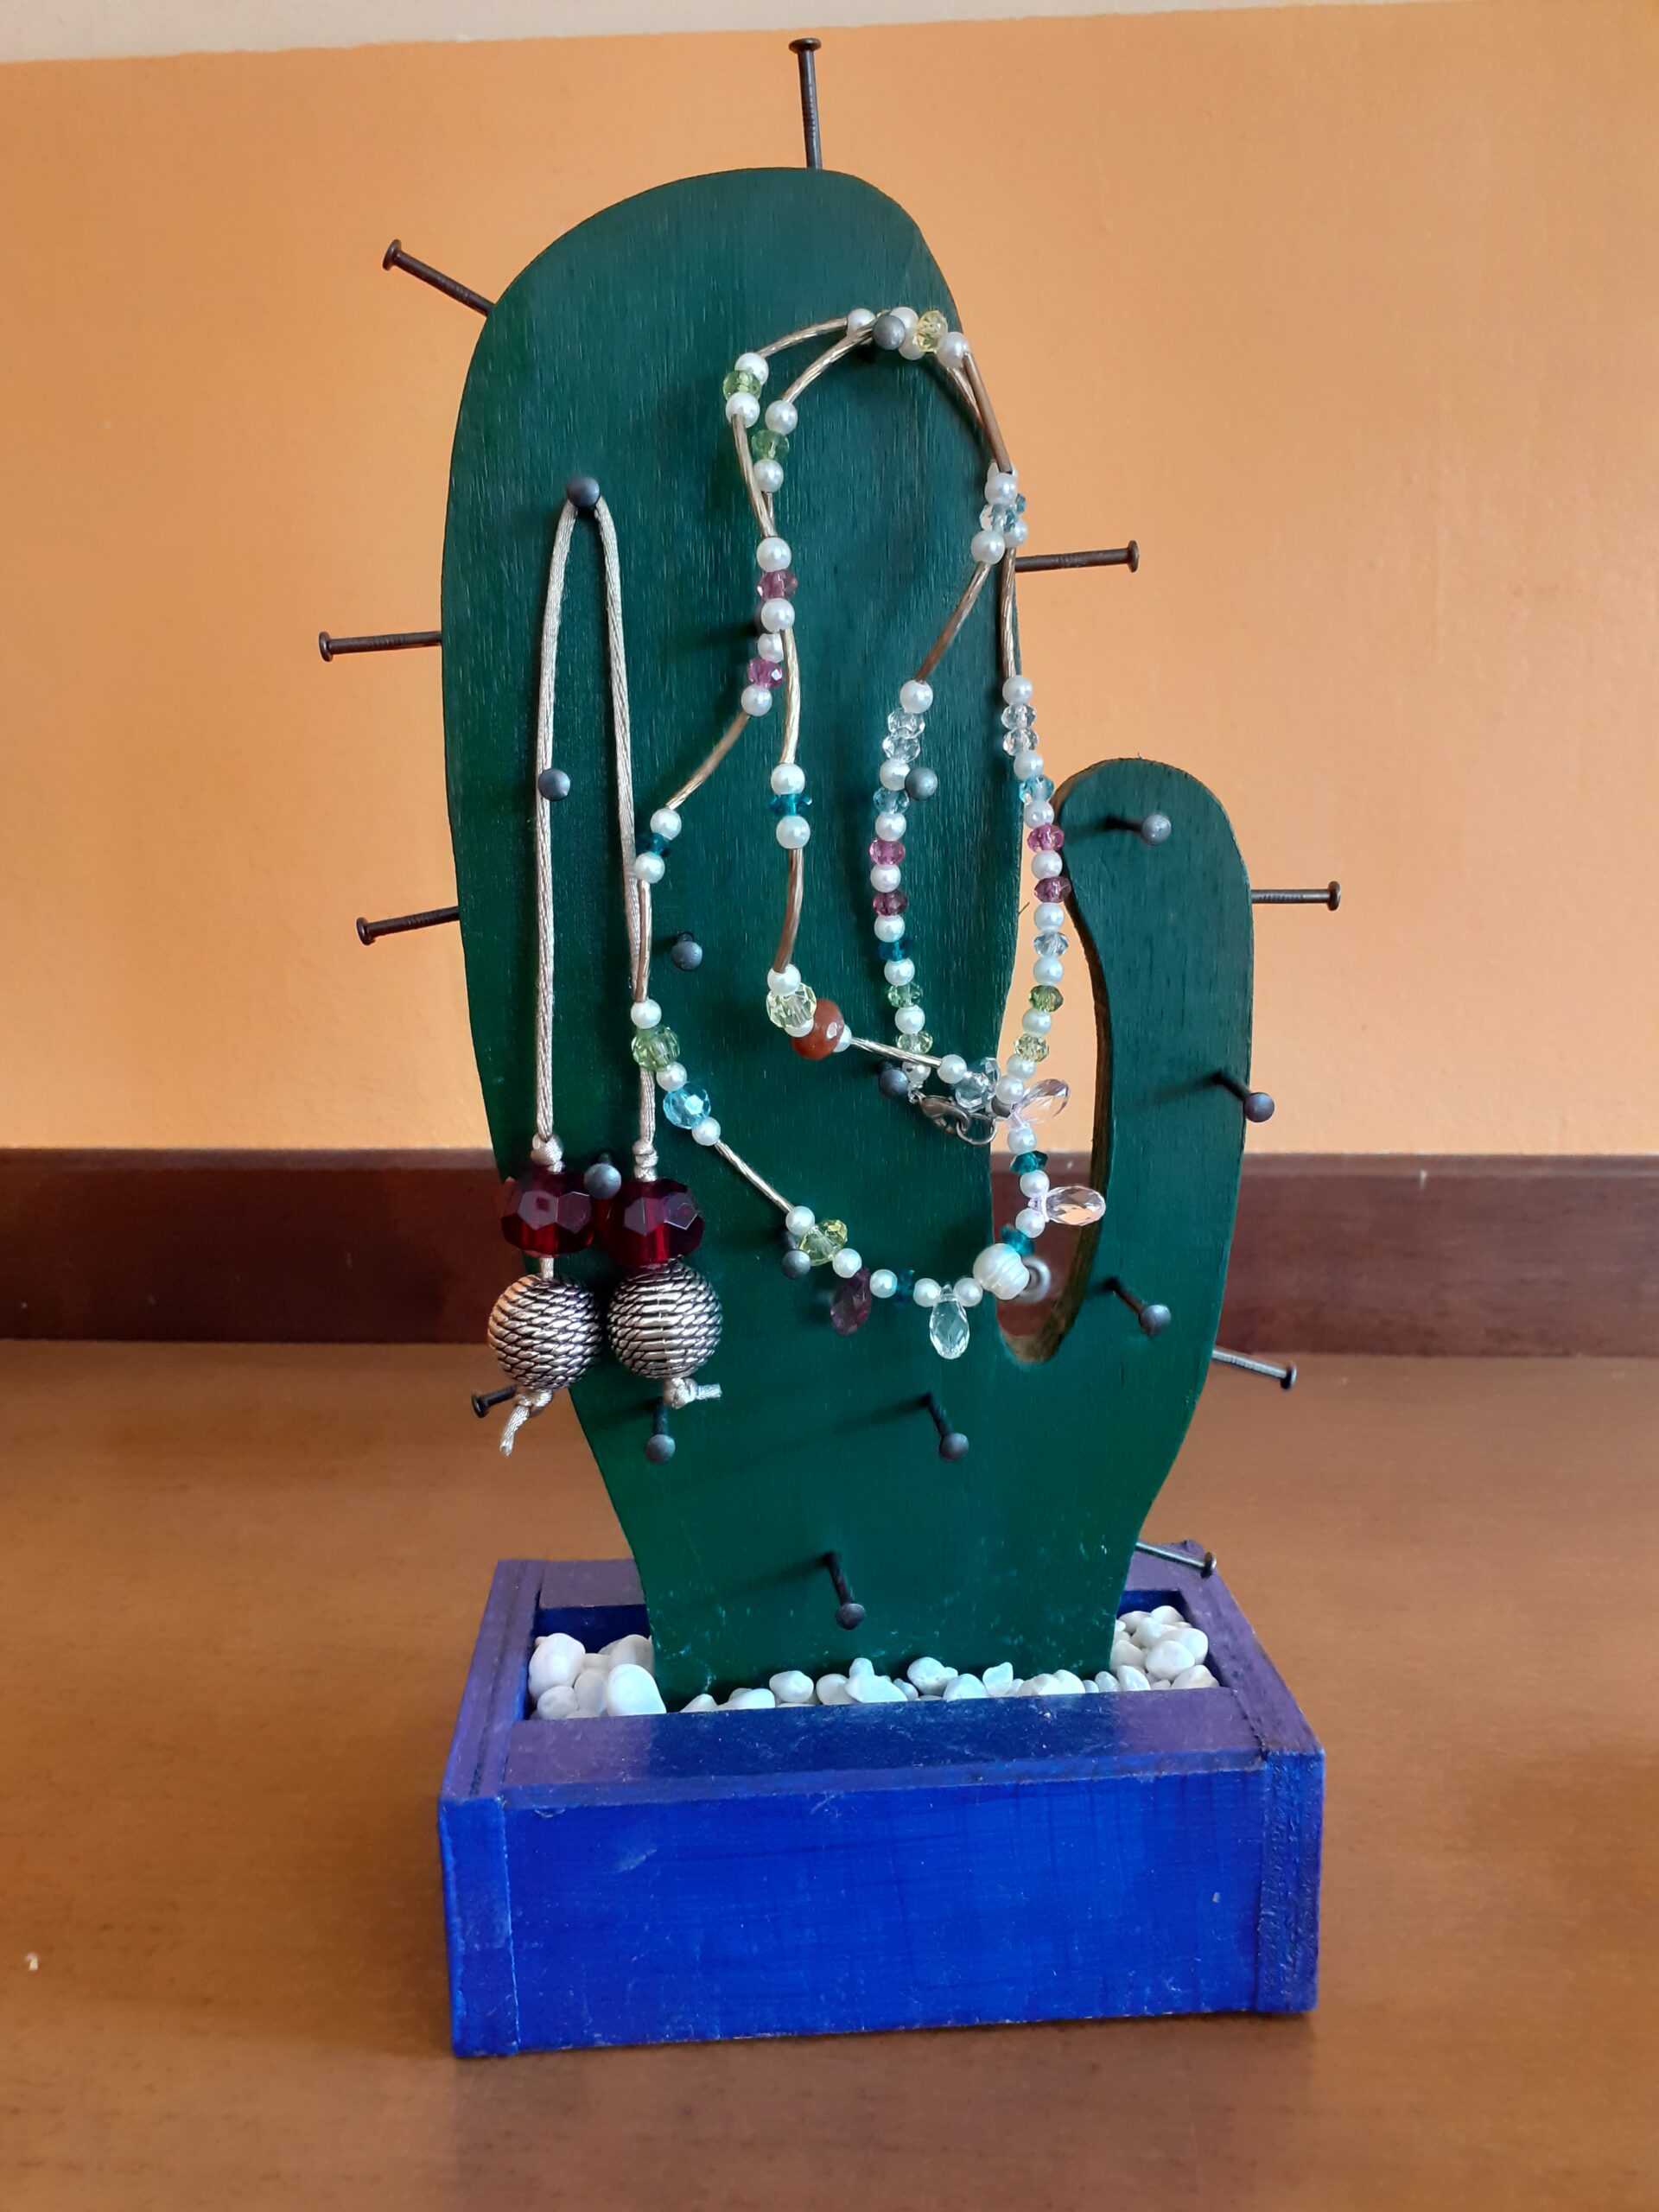 Cactus porta oggetti o chiavi o gioielli o..